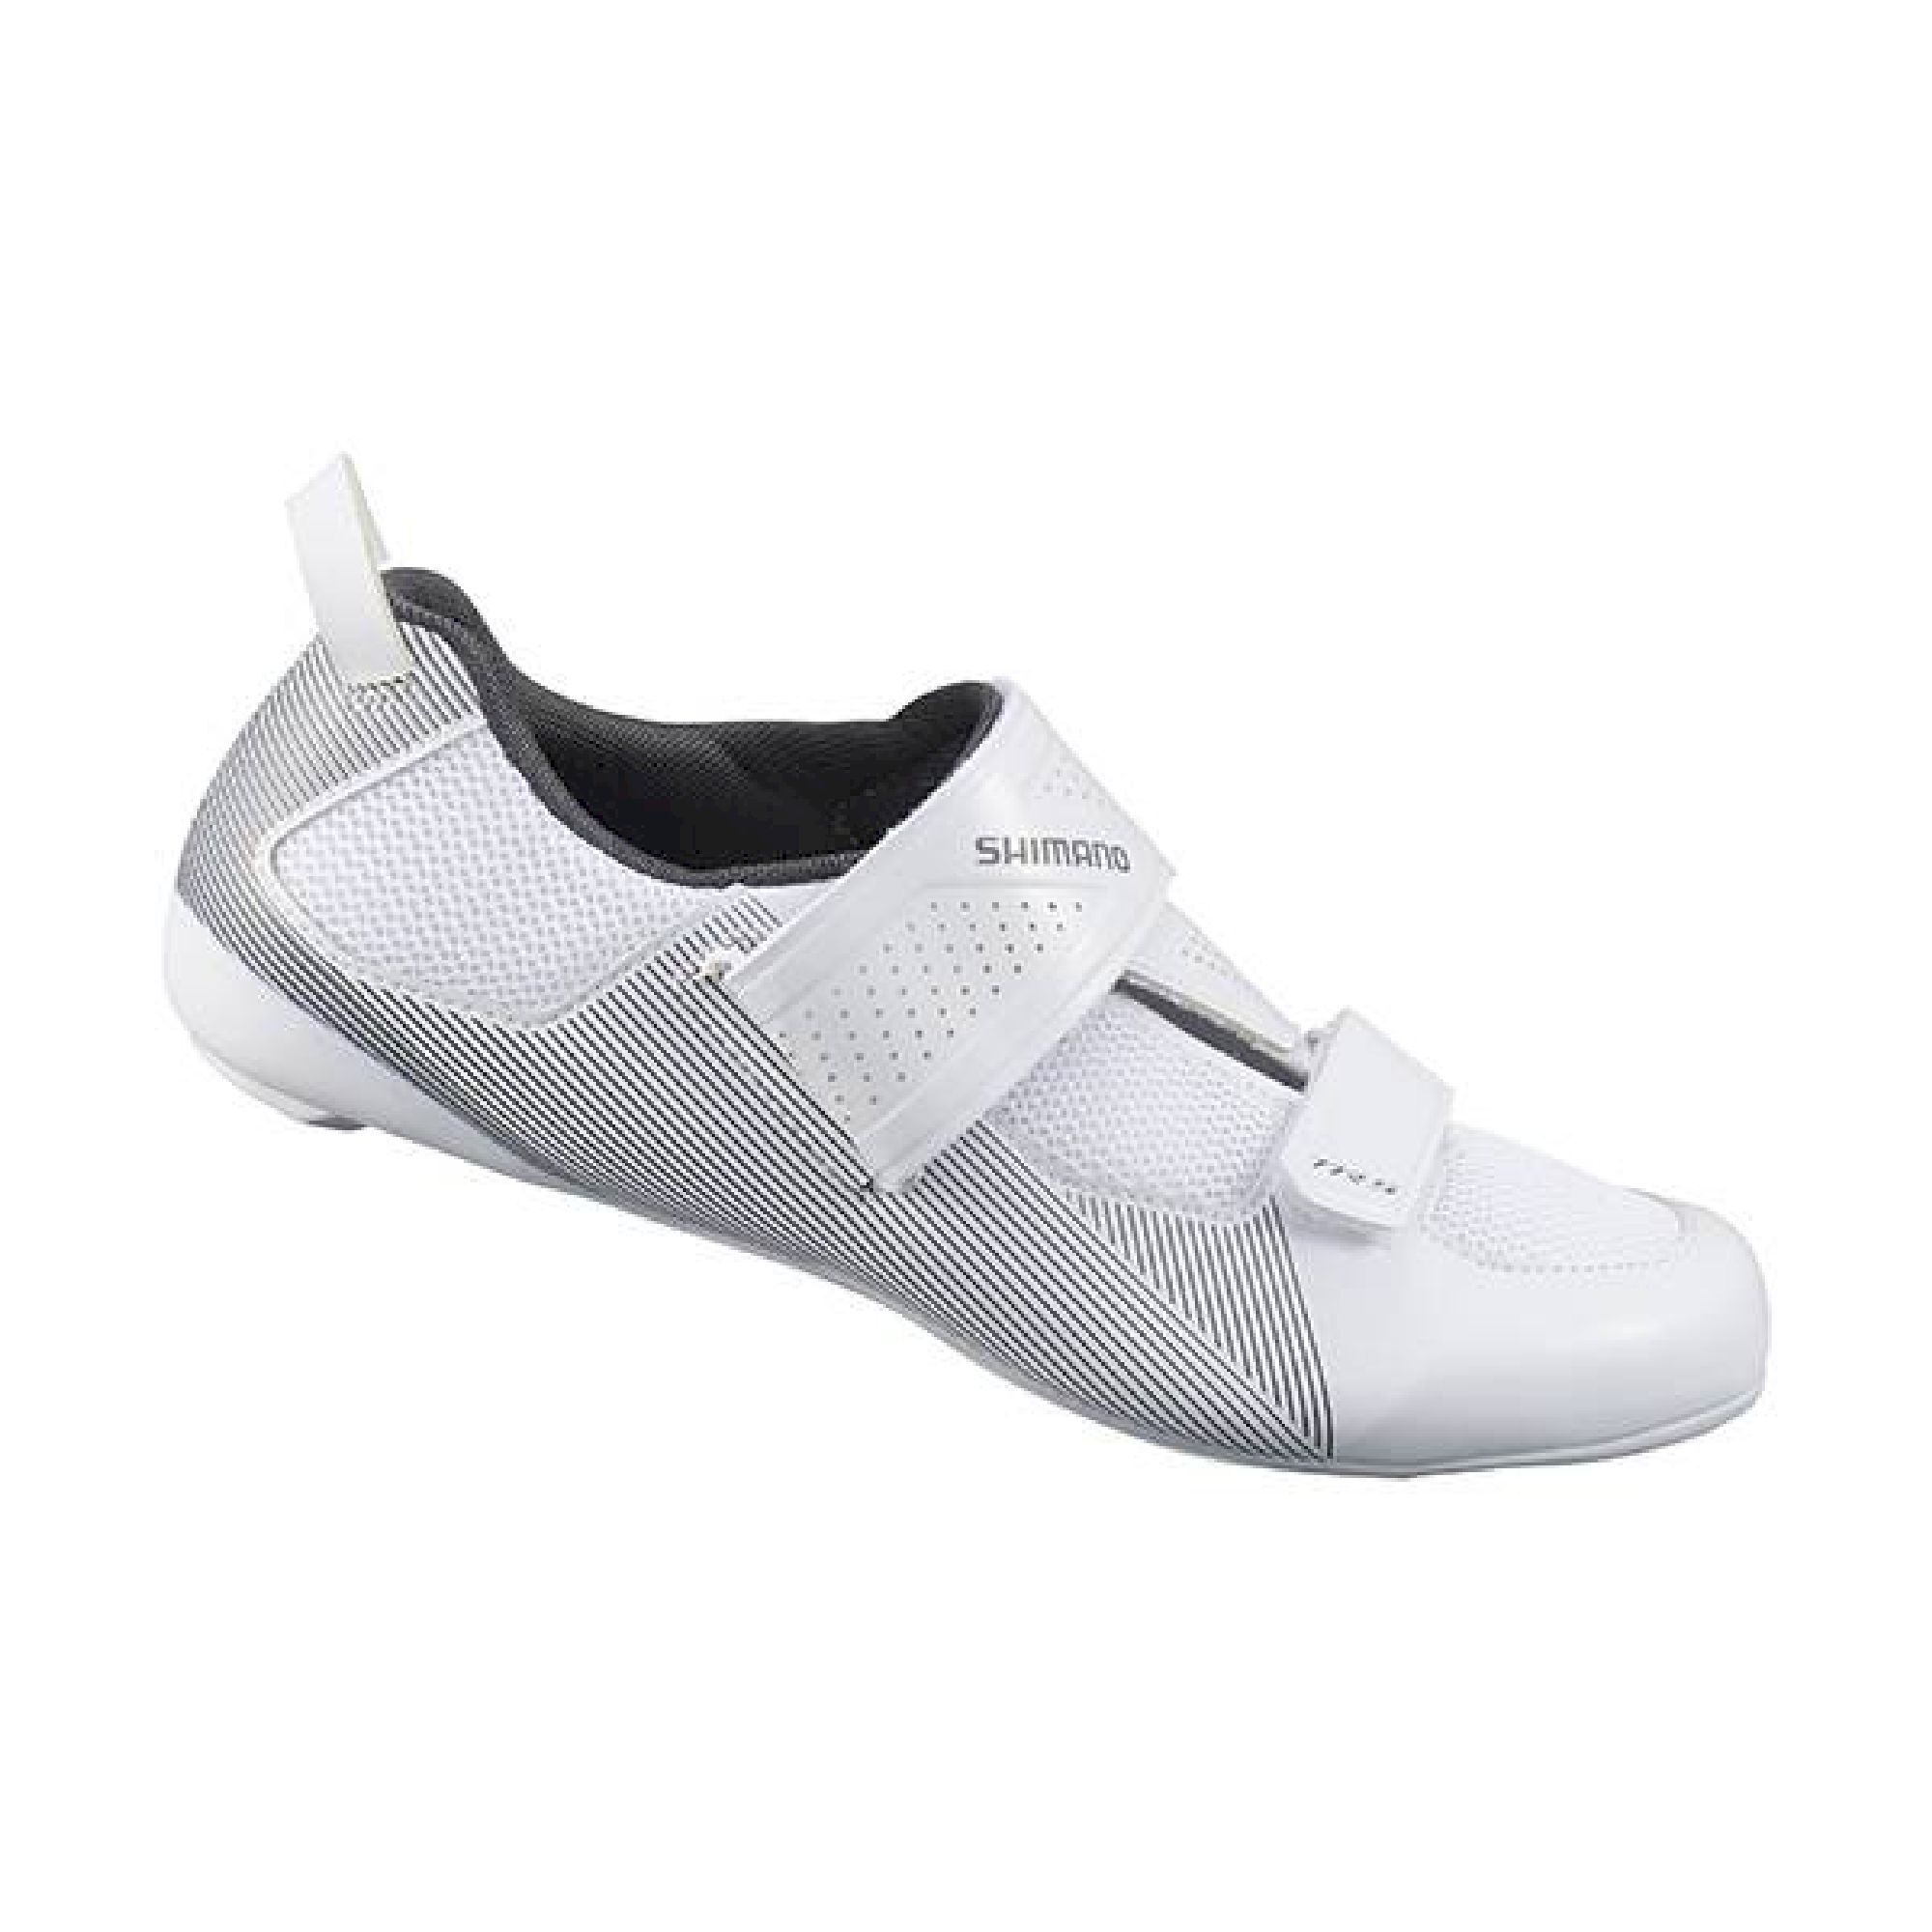 Shimano TR501 - Cycling shoes - Women's